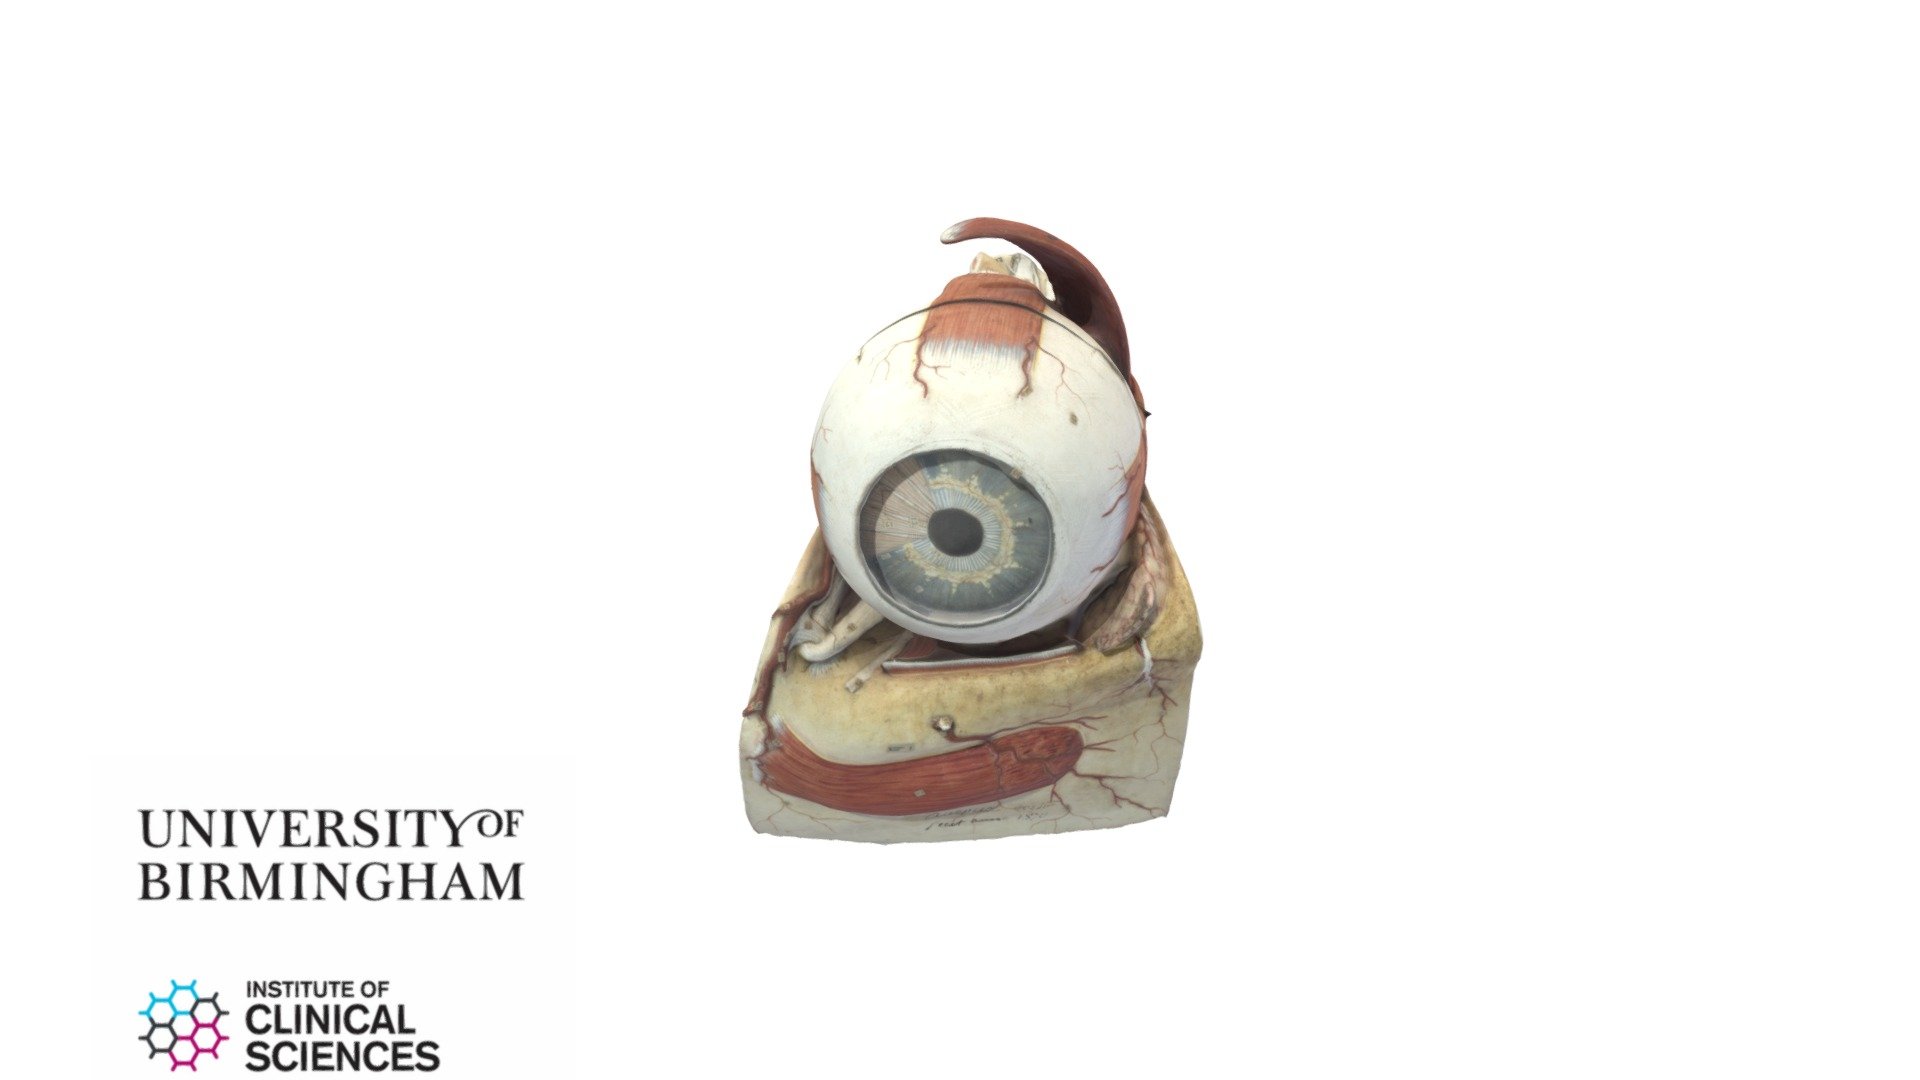 Model of human eye